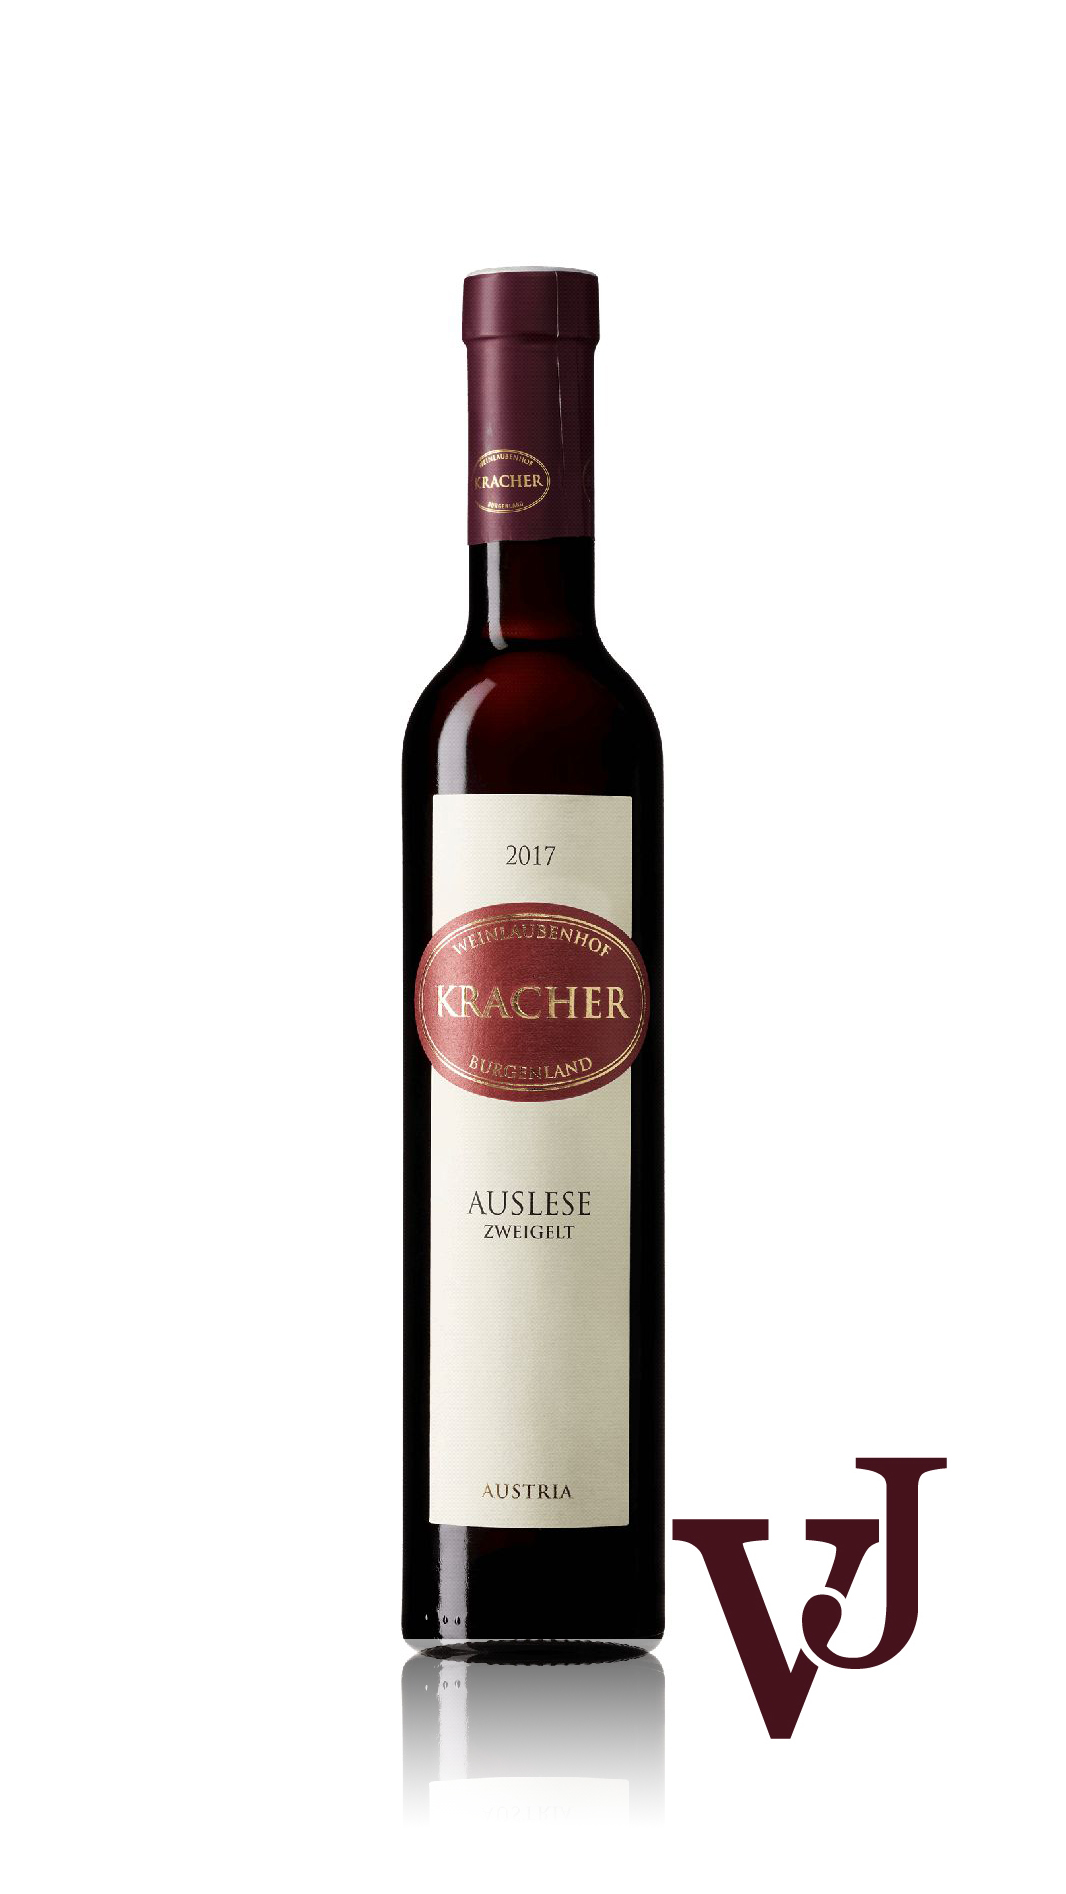 Rött Vin - Kracher Zweigelt Auslese artikel nummer 7459702 från producenten Kracher från området Österrike